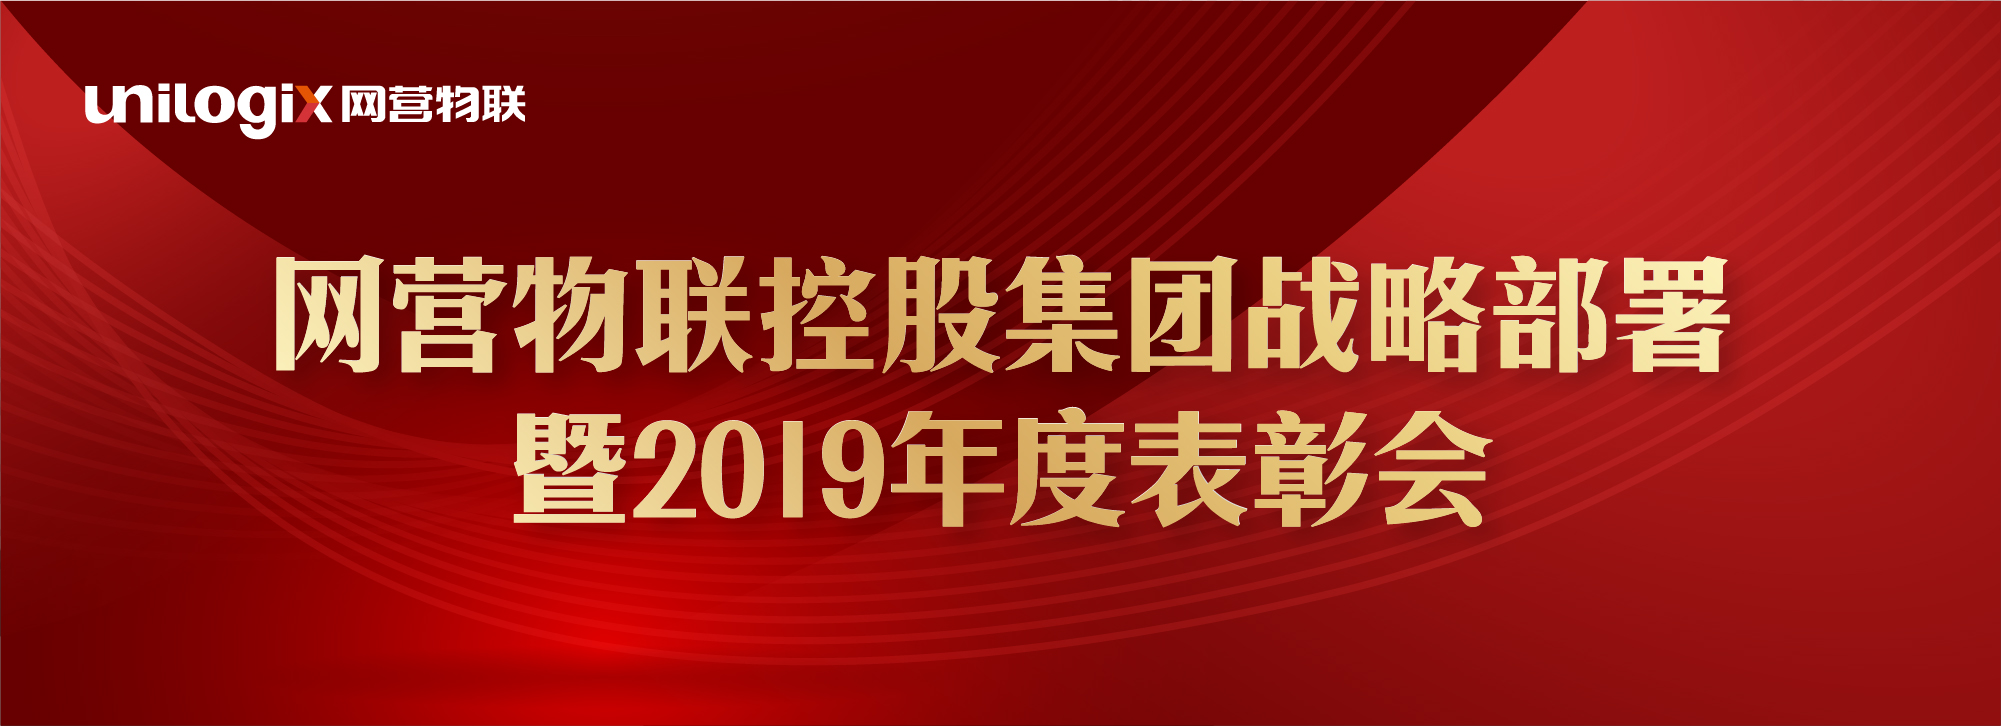 网营物联控股集团战略部署暨2019年度表彰会成功举行